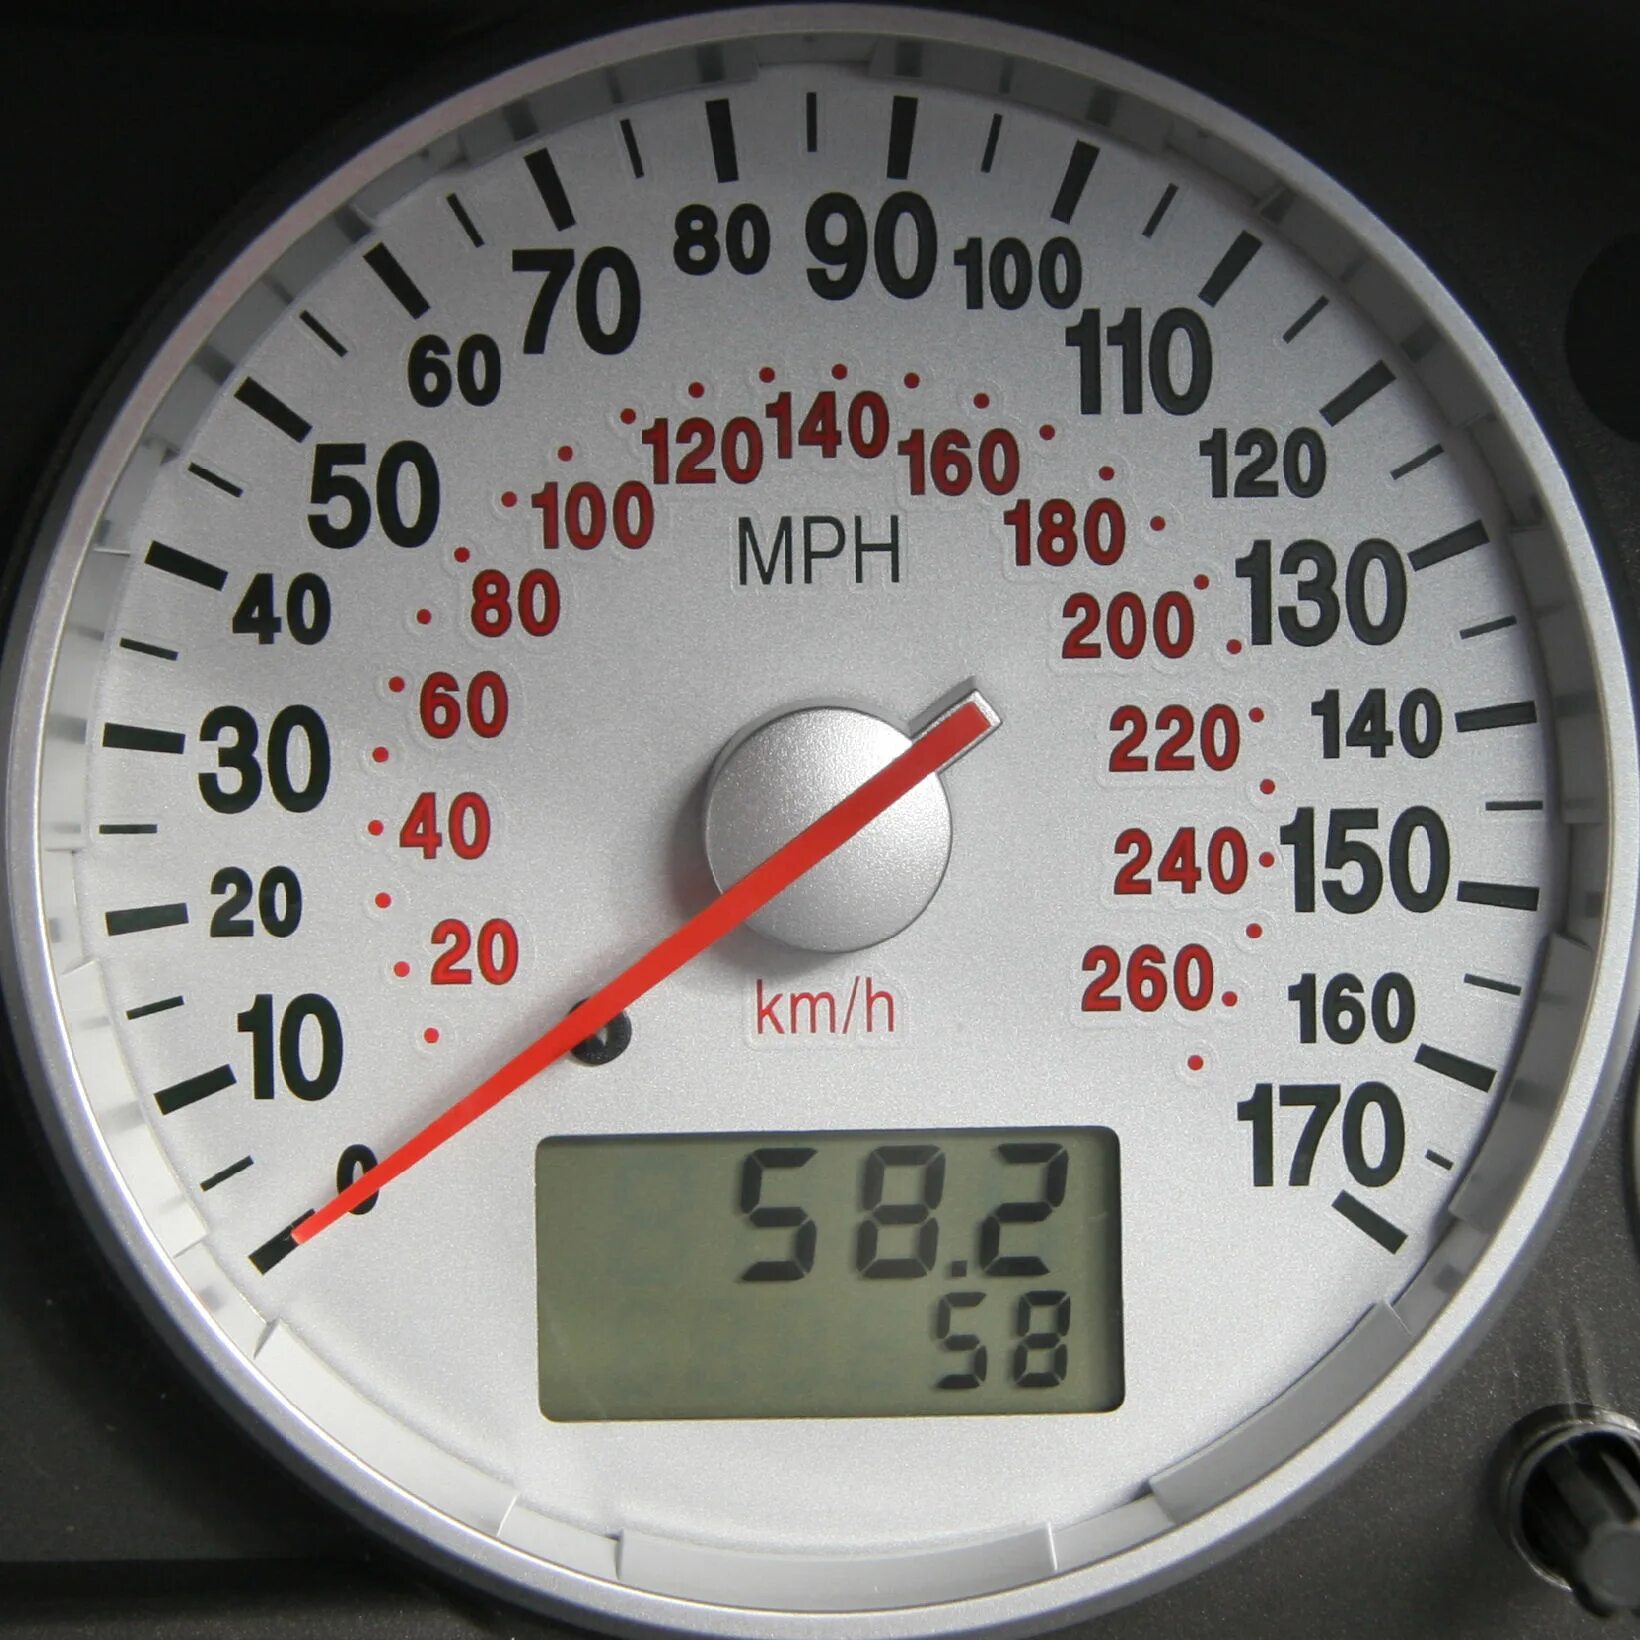 GPS спидометр для автомобиля 100 км/ч. Спидометр миль в час. Спидометр мили и километры. Американский спидометр. 620 км в часах